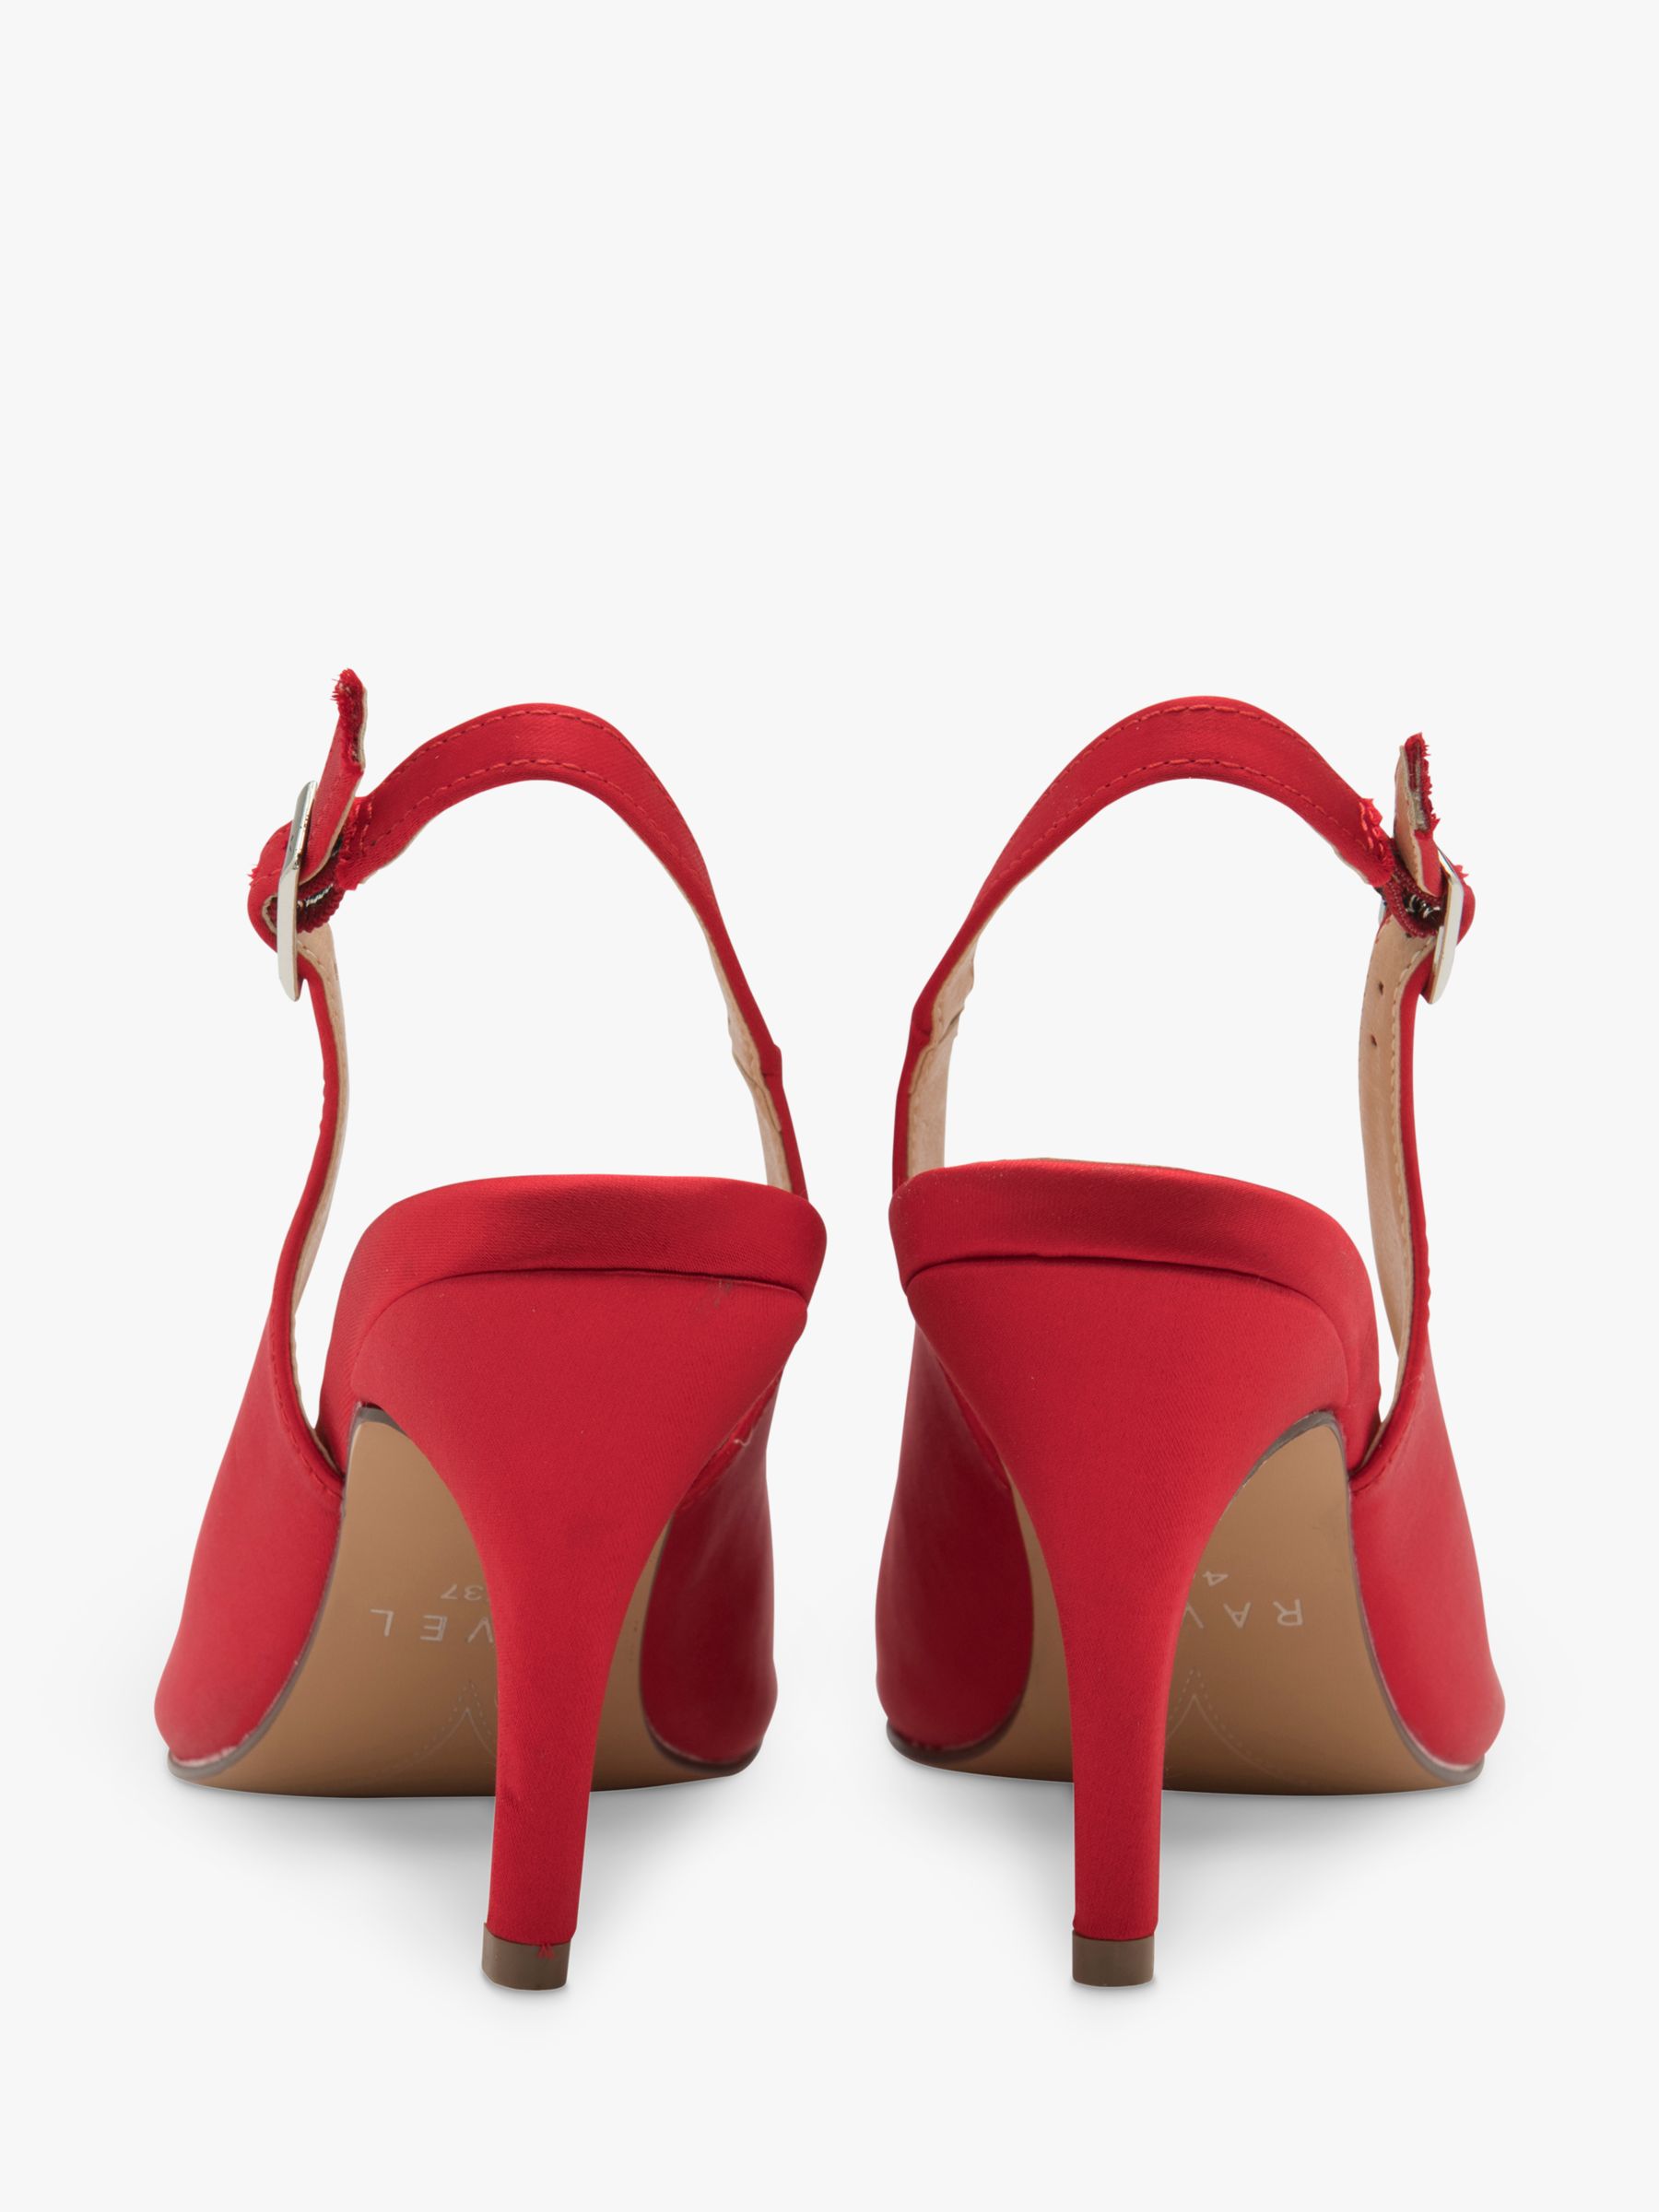 Ravel Kavan Satin Stiletto Heel Slingback Court Shoes, Red, 3